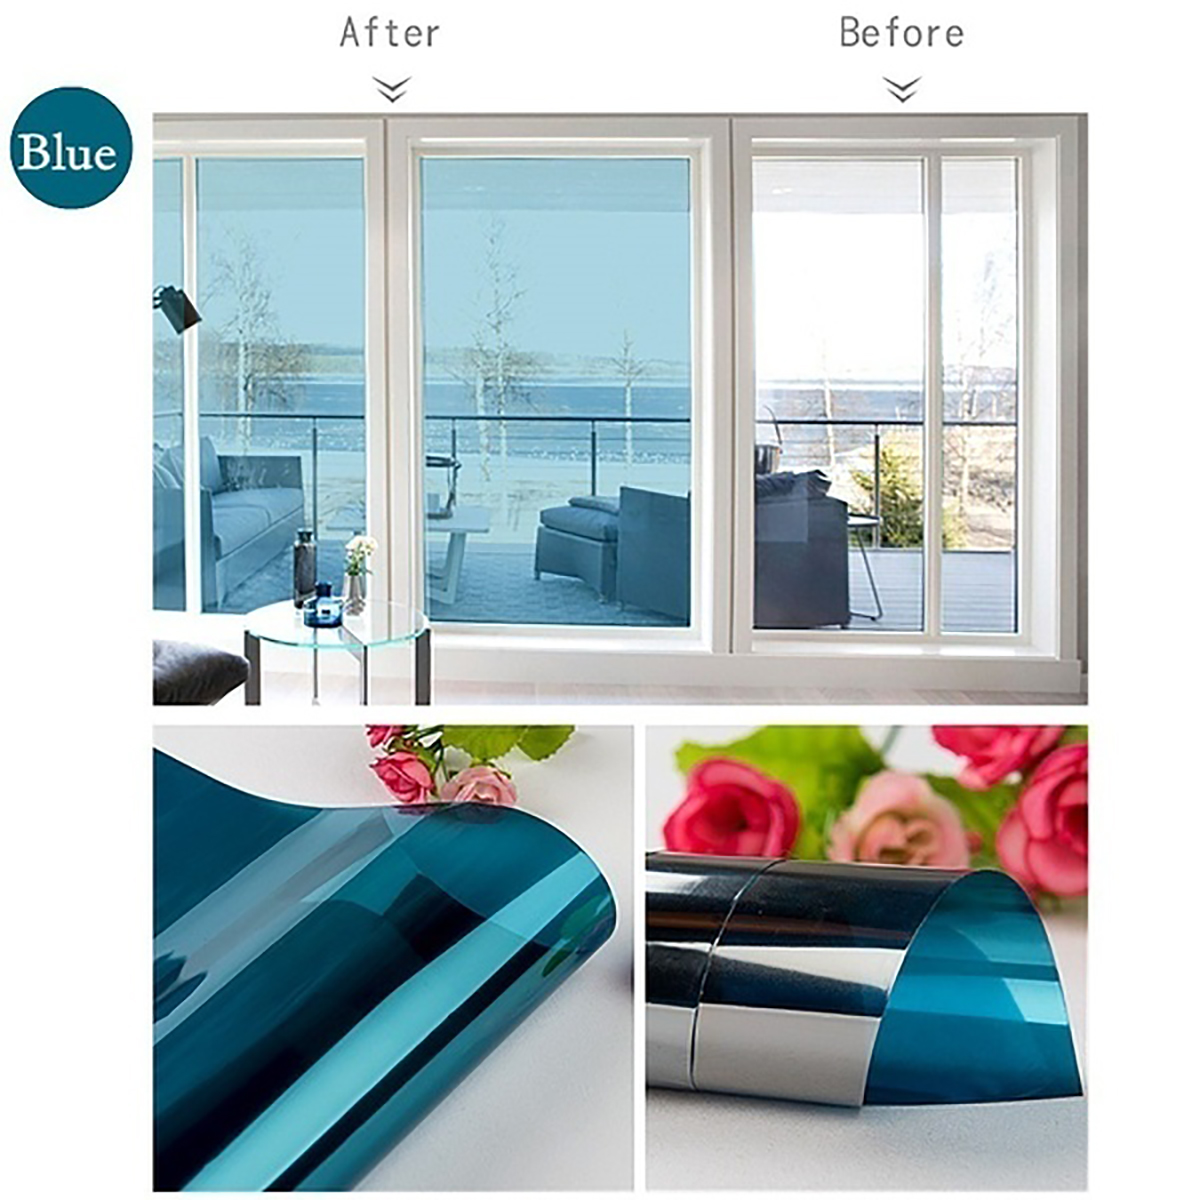 One-Way-Mirror-Window-Film-Privacy-Reflective-Sticker-Tint-Insulation-Solar-Window-Privacy-Decoratio-1553833-4